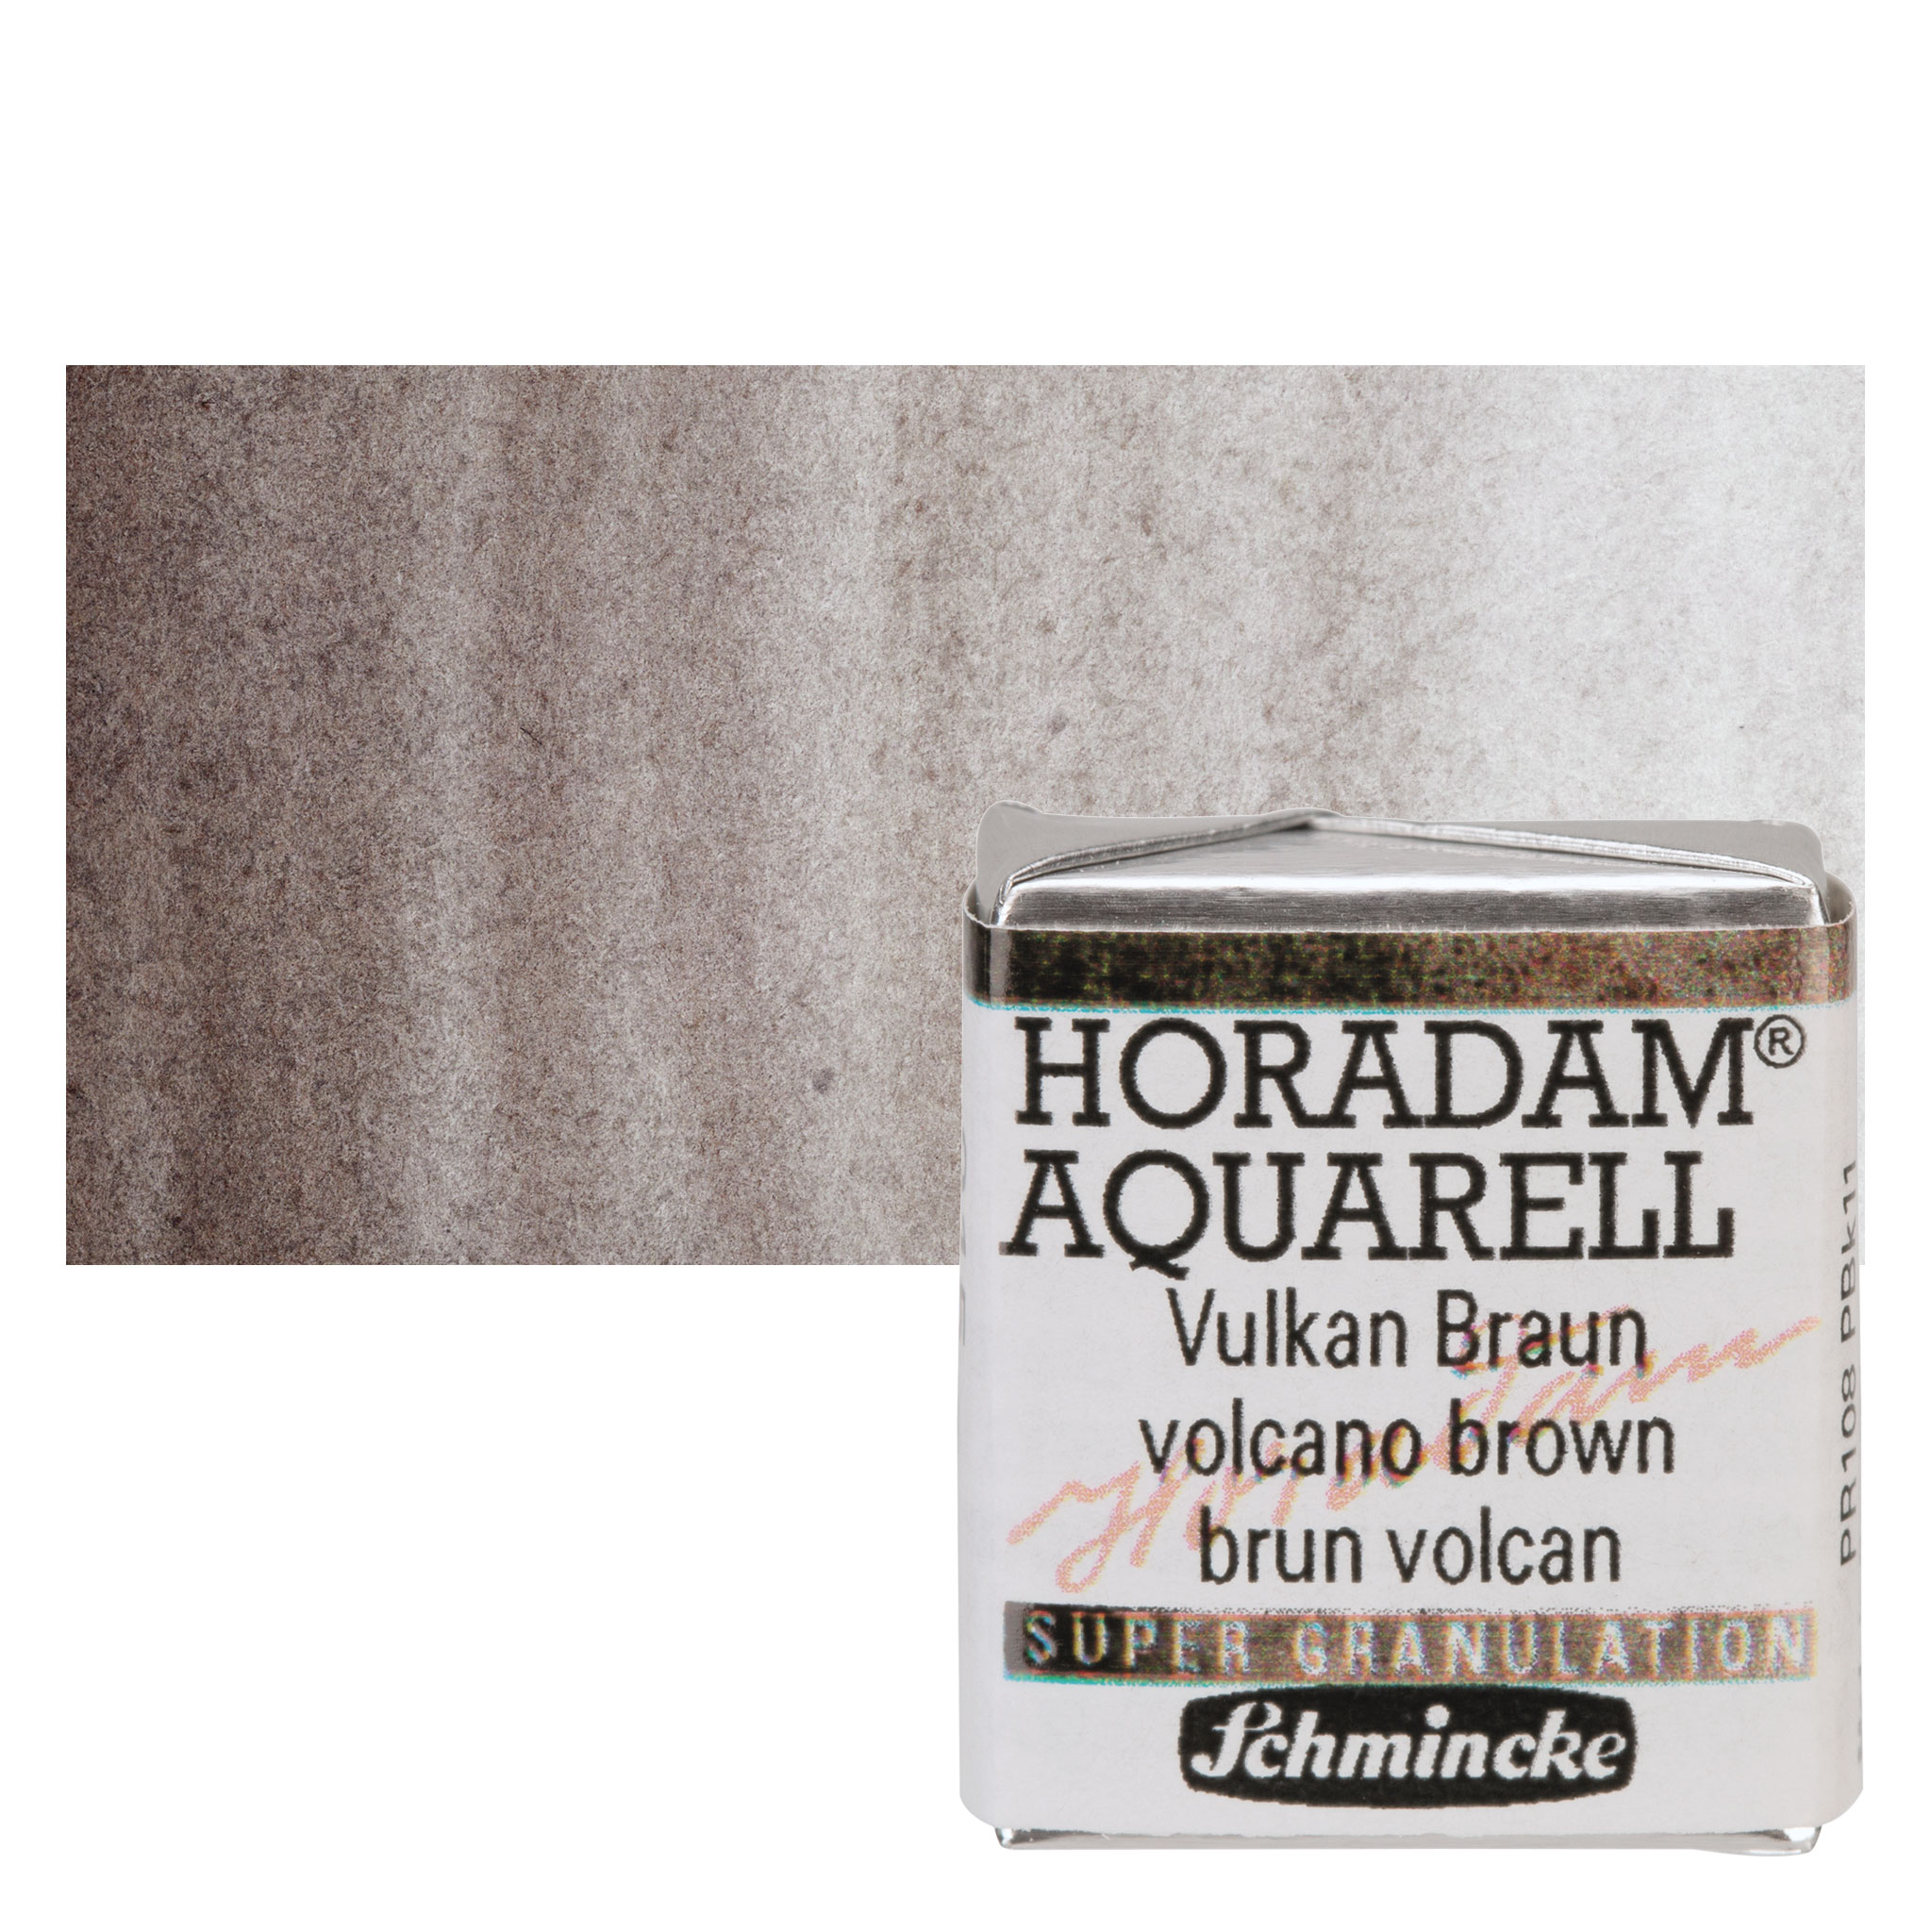 Schmincke Horadam Aquarell 12 Half-Pan Paint Set with 24 Color Dot Card